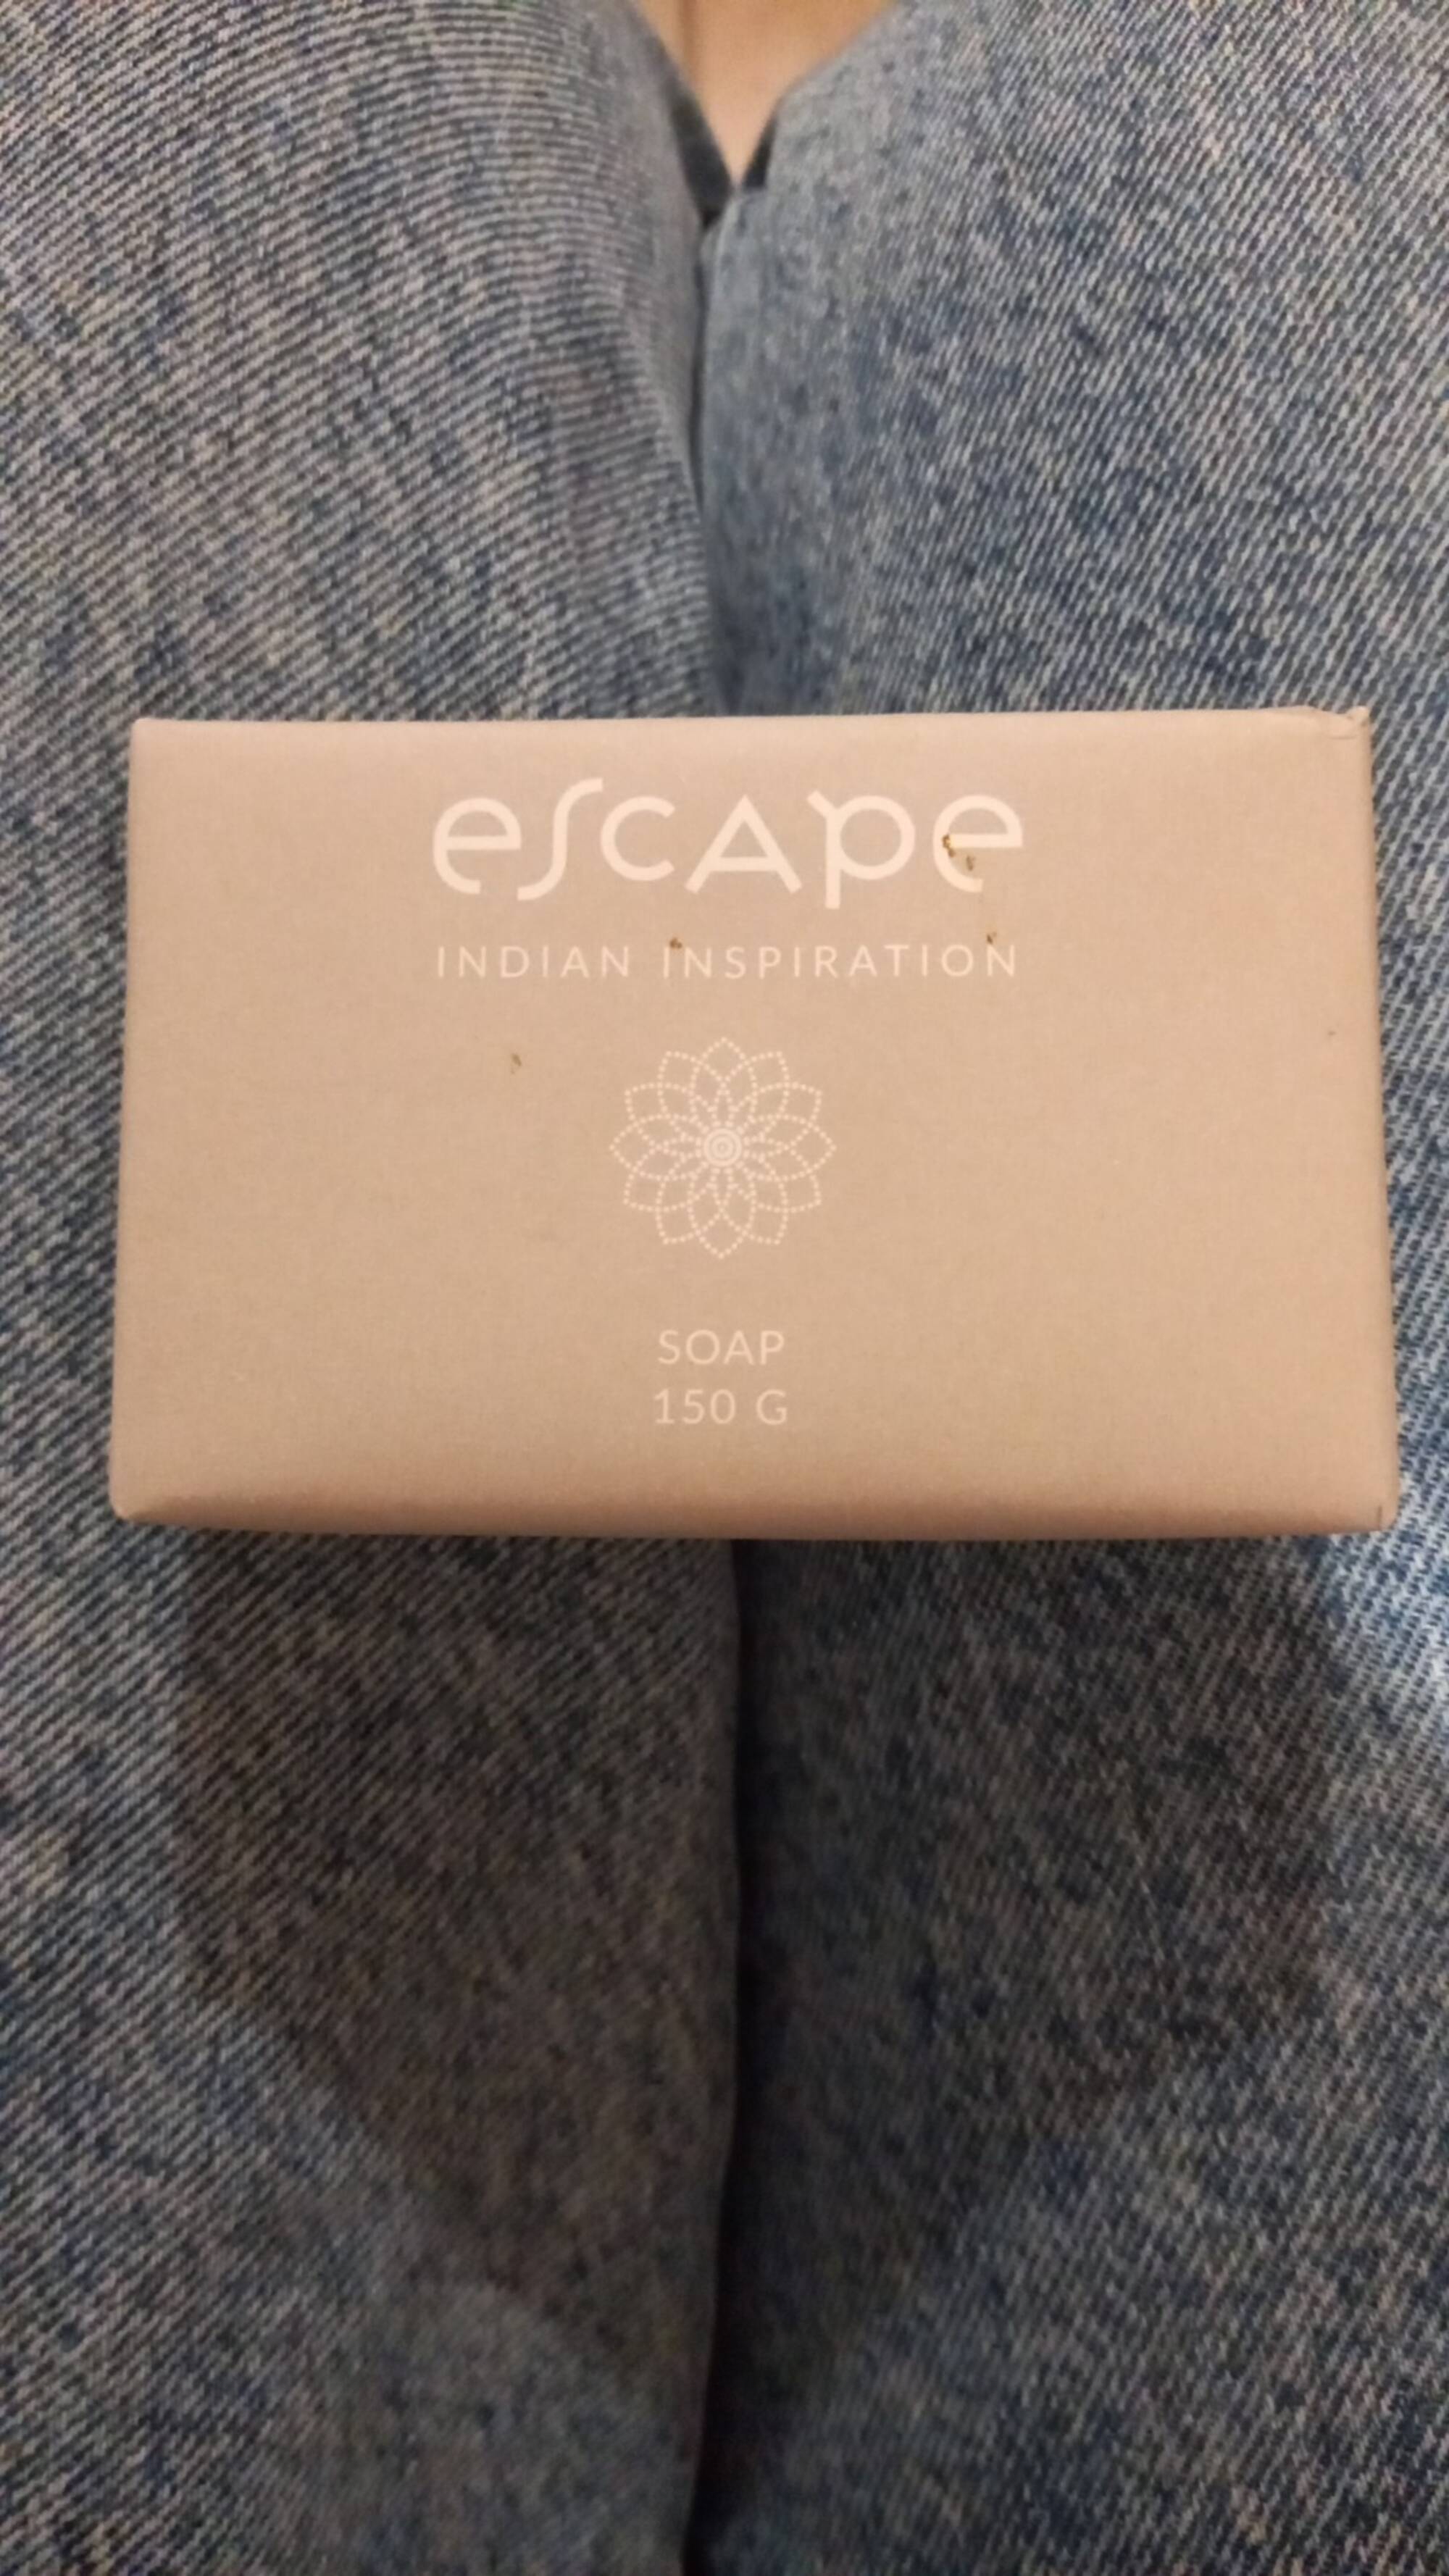 ESCAPE - Indian inspiration Soap